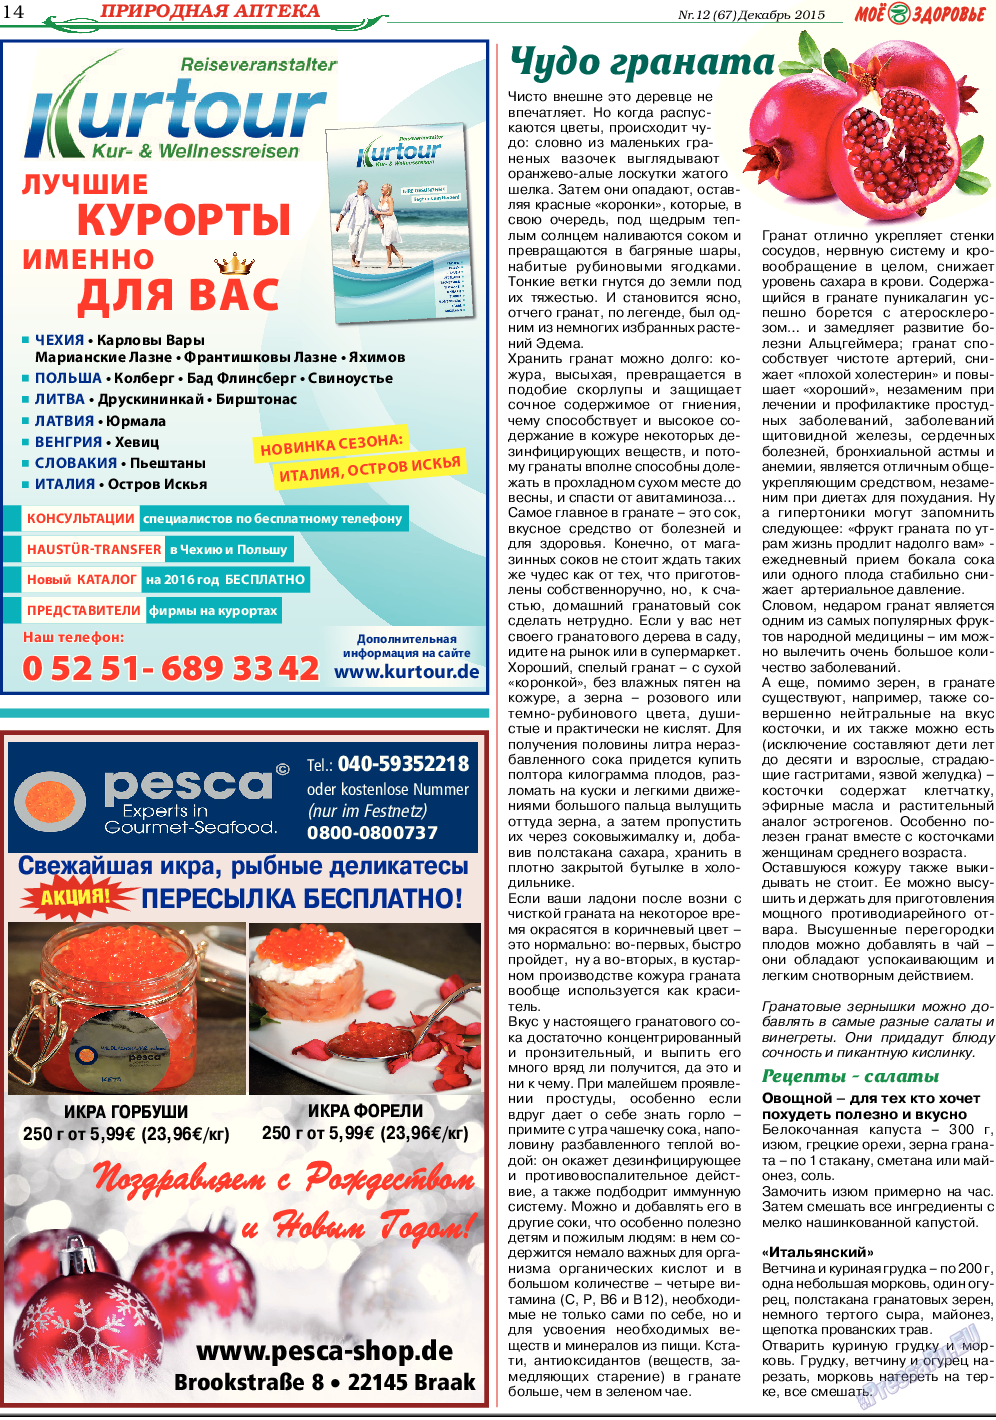 Кругозор, газета. 2015 №12 стр.14